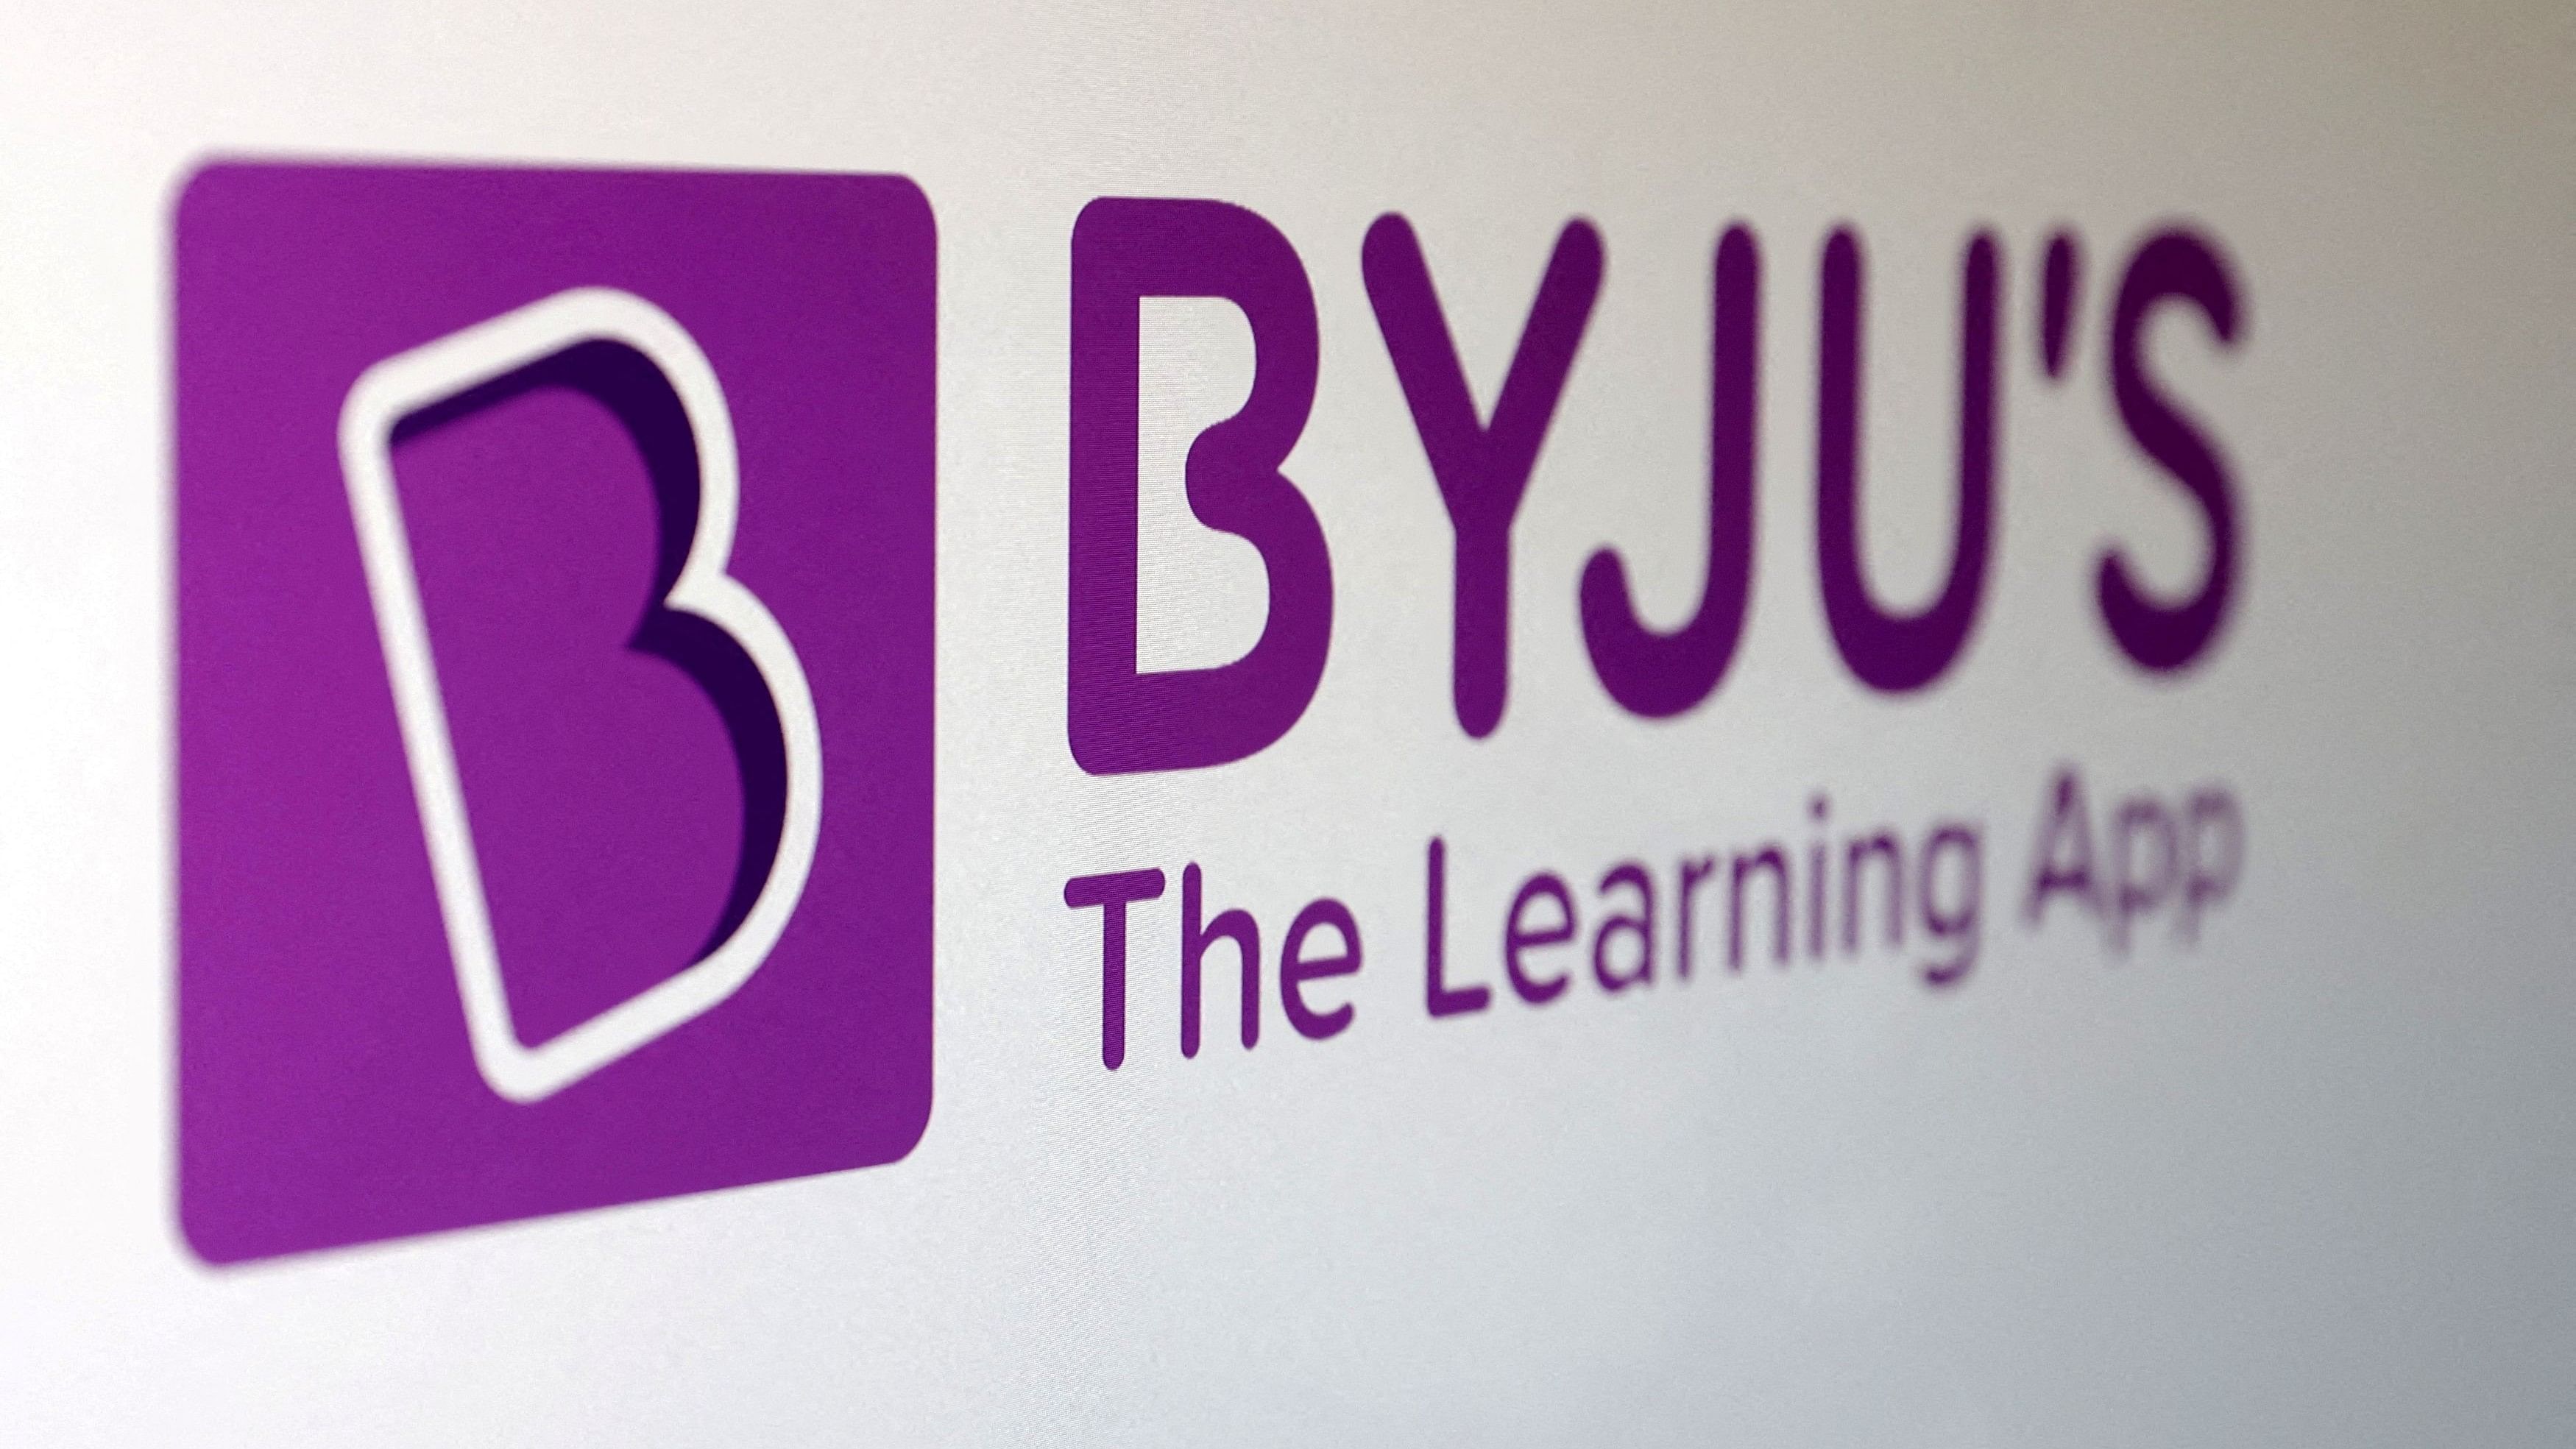 <div class="paragraphs"><p>Representative image of Byju's logo.</p></div>